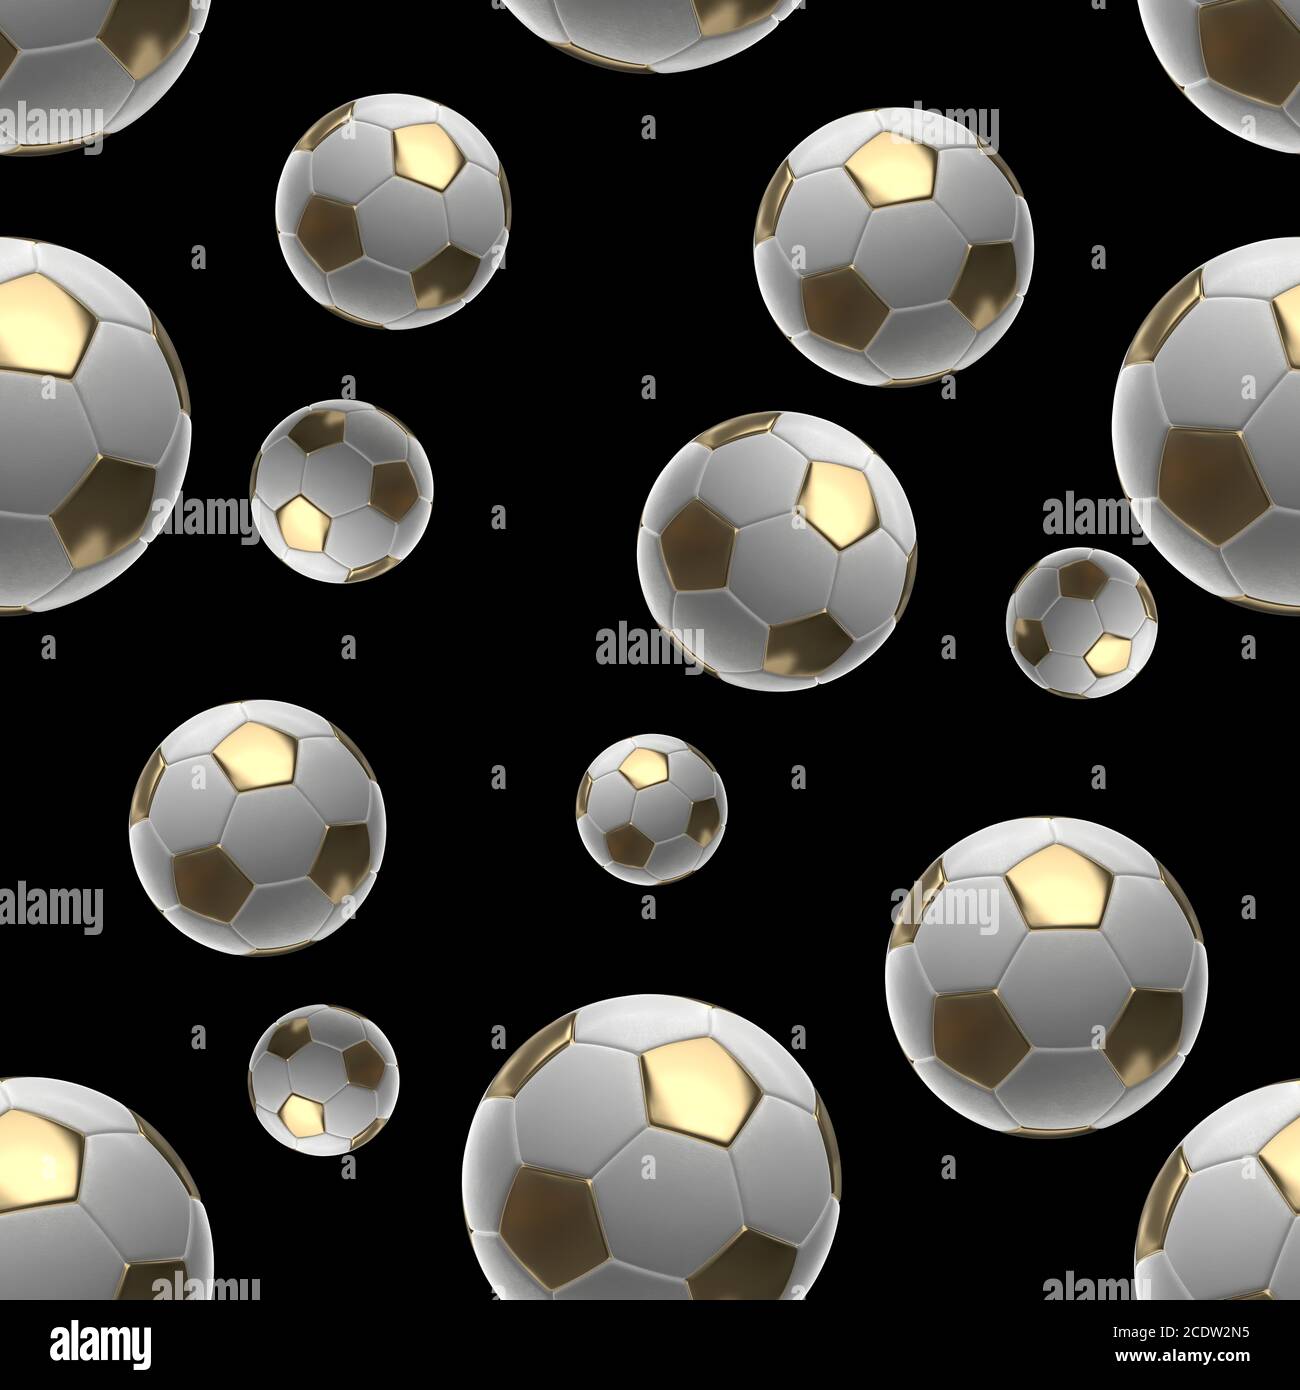 Les balles de soccer isolé sur fond noir motif transparent 3d illustration Banque D'Images